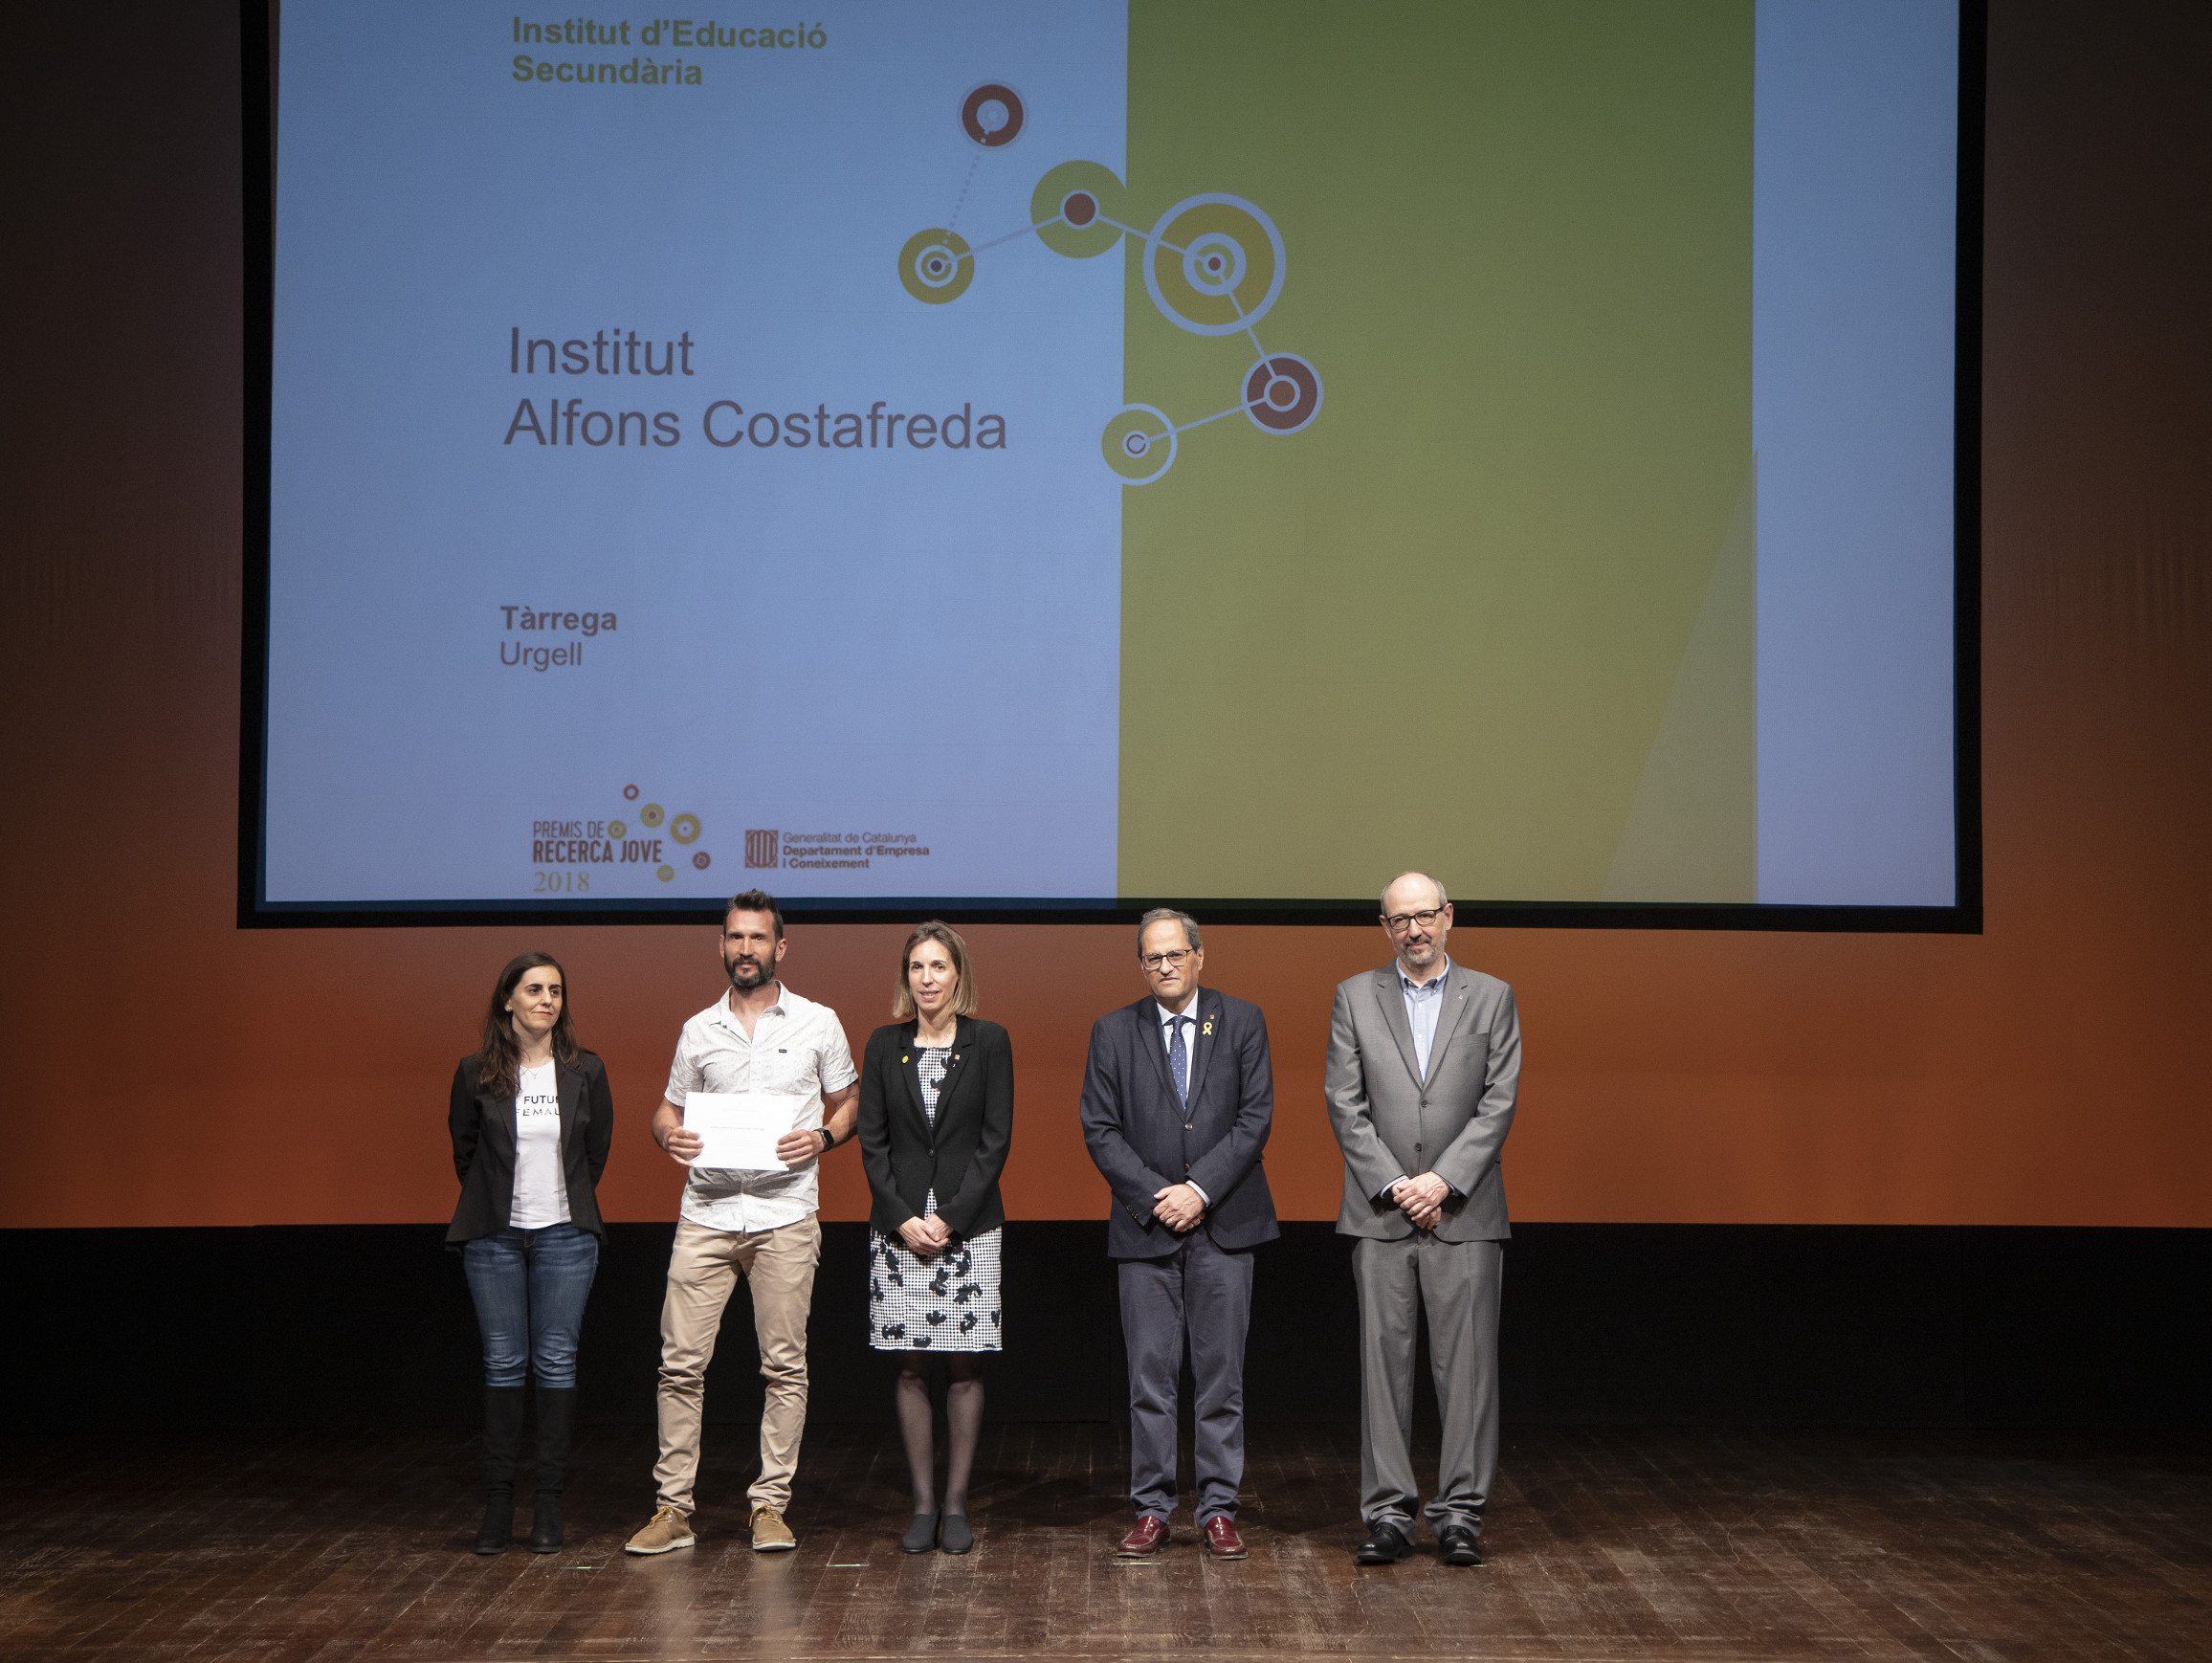 L'institut Alfons Costafreda ha rebut el Premi Reginó pel seu treball sobre el gènere